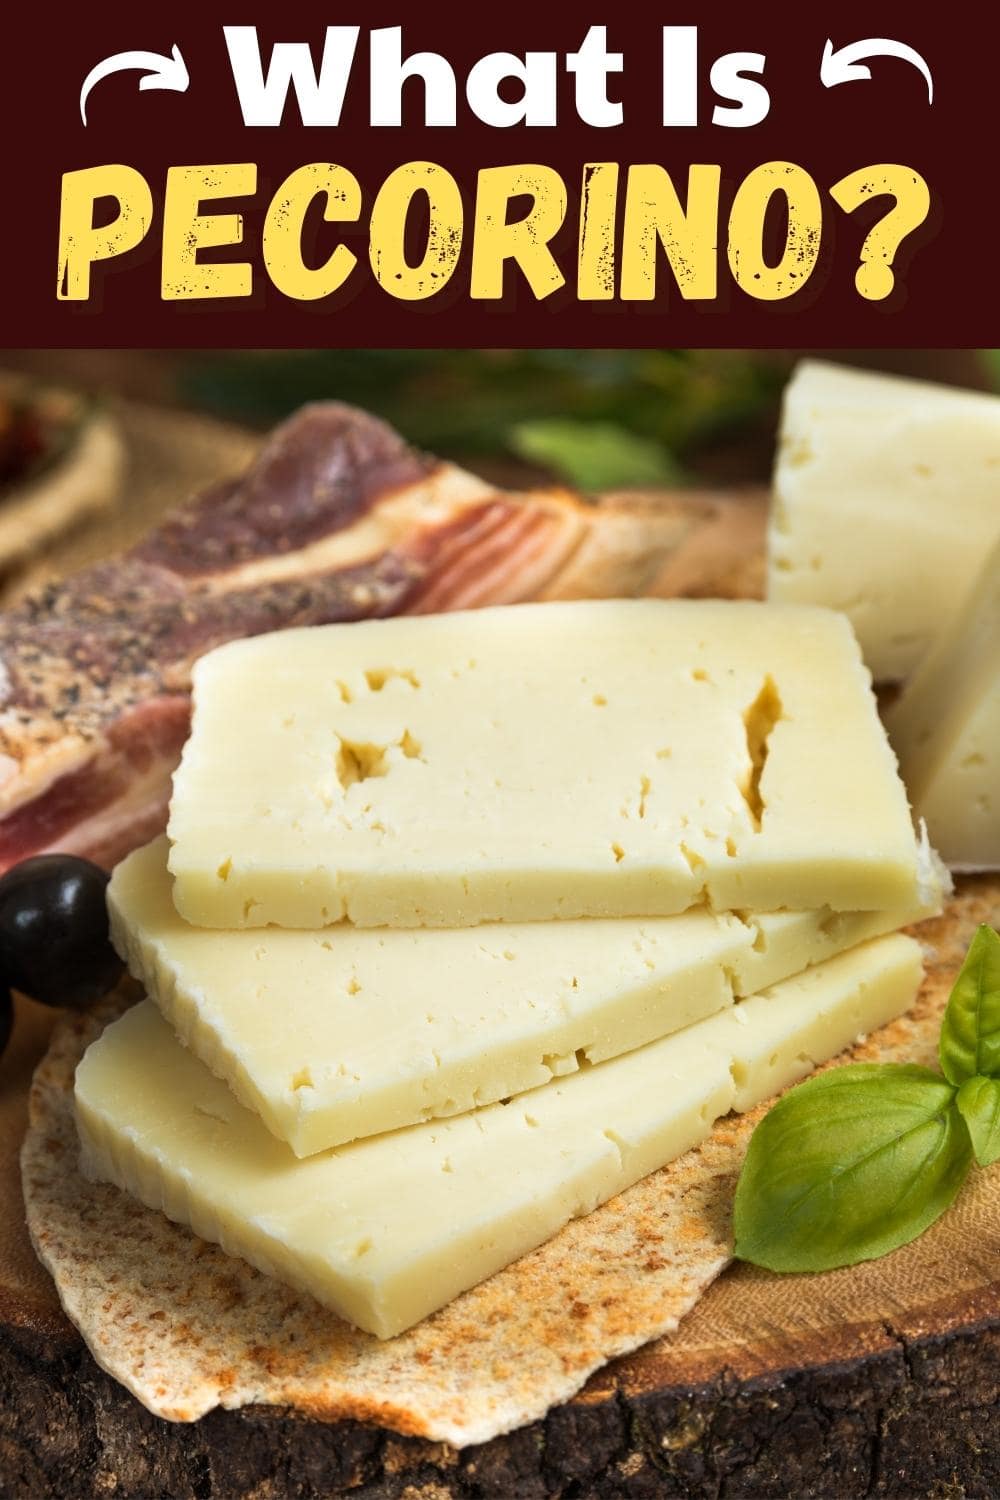 What Is Pecorino?